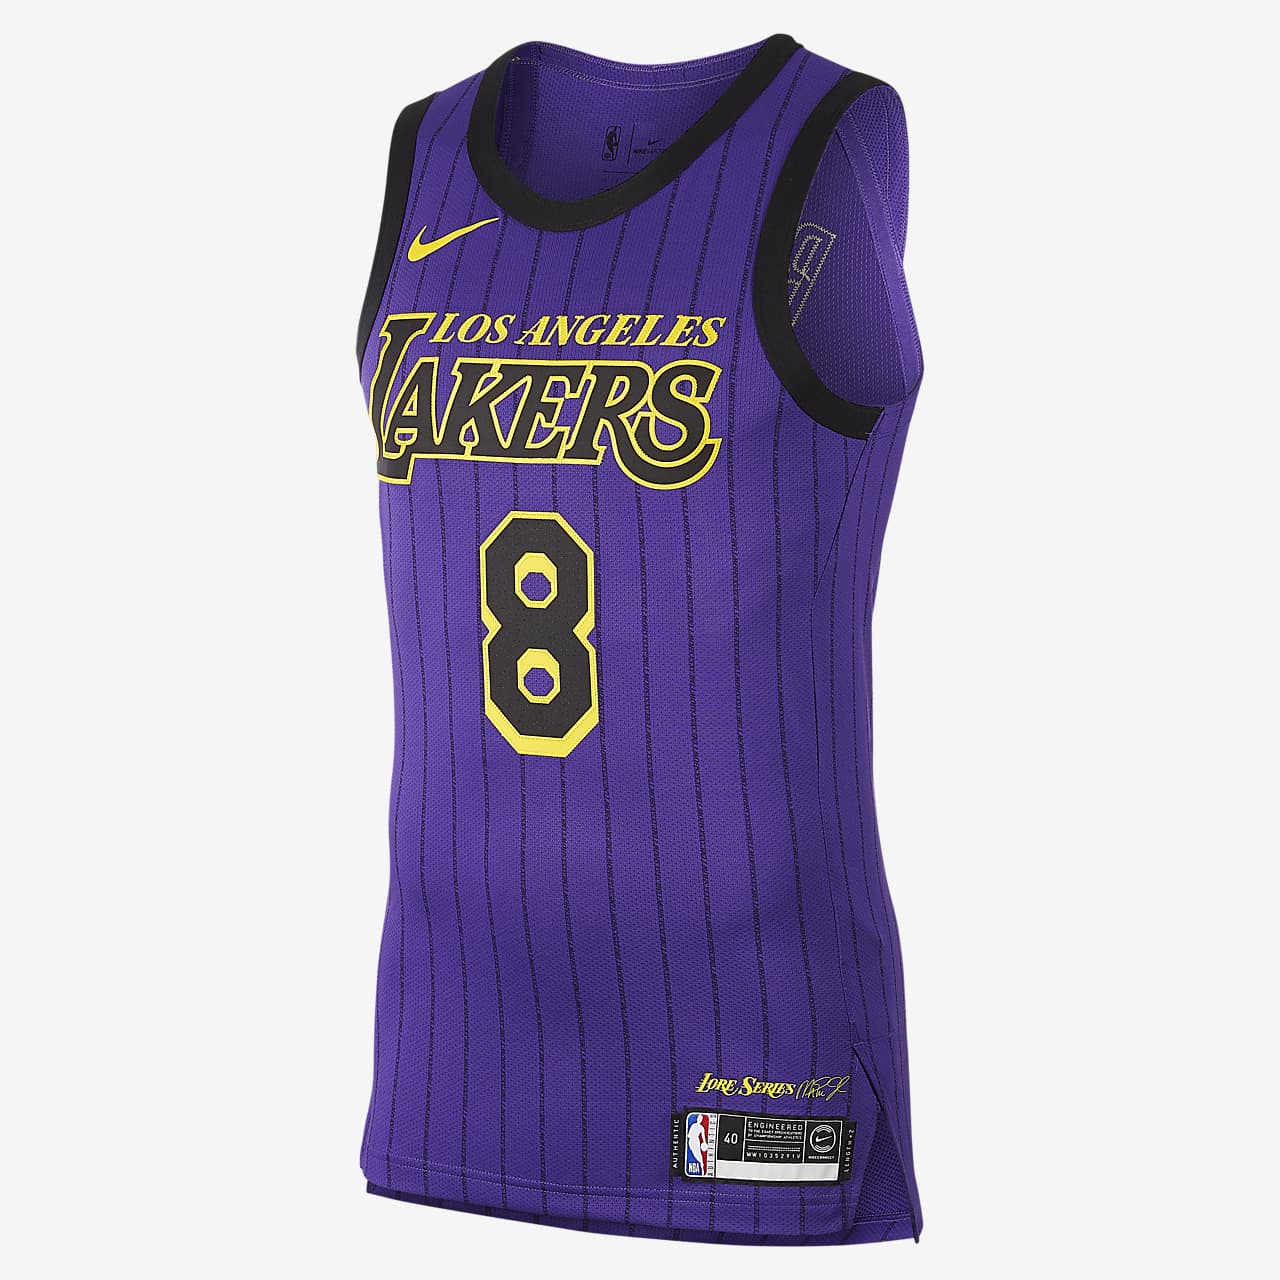 洛杉矶湖人队 (Kobe Bryant) City Edition Authentic Nike NBA Connected Jersey 男子球衣